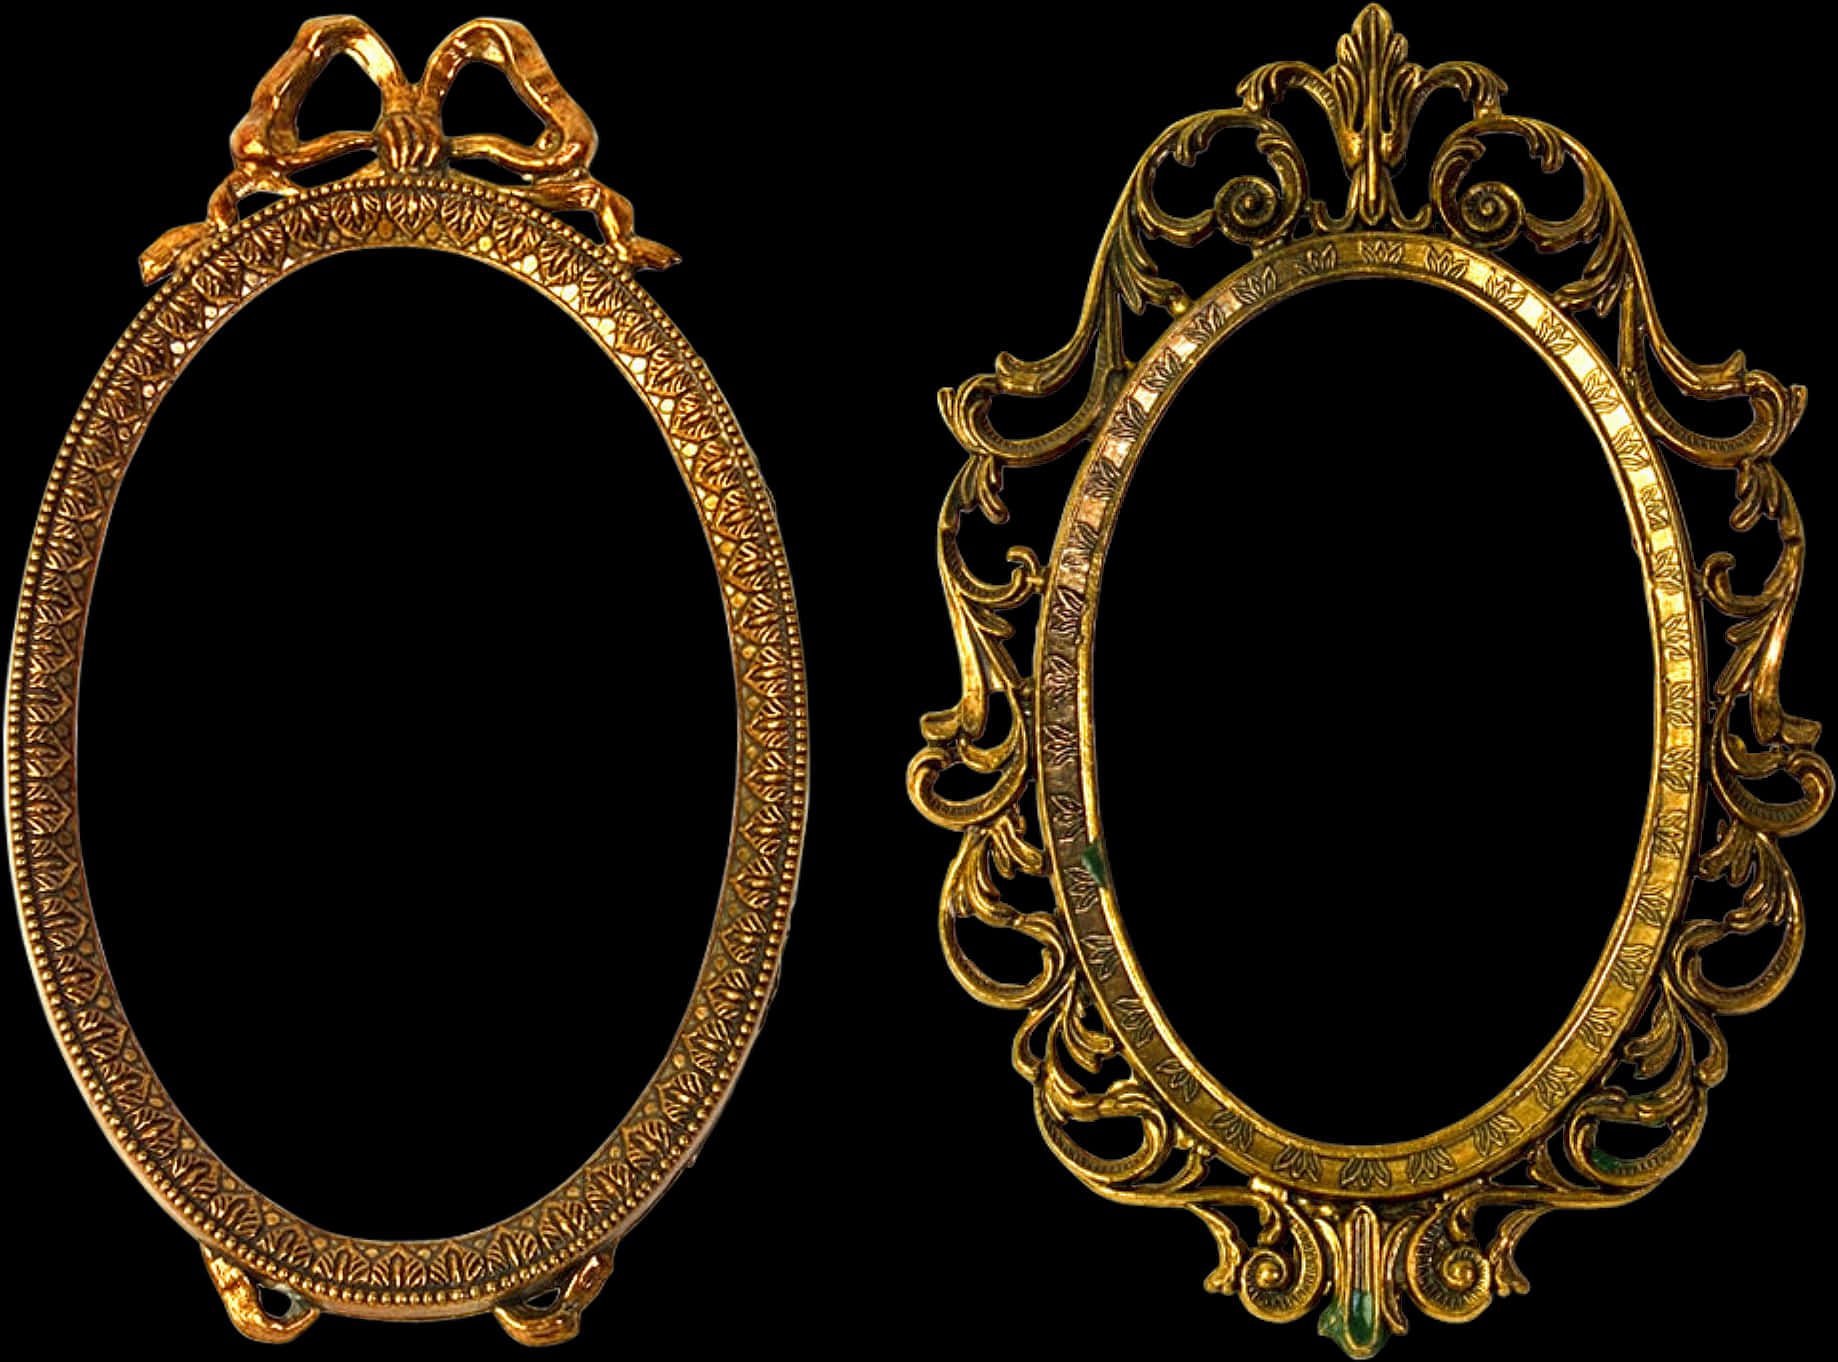 Vintage Golden Oval Frames